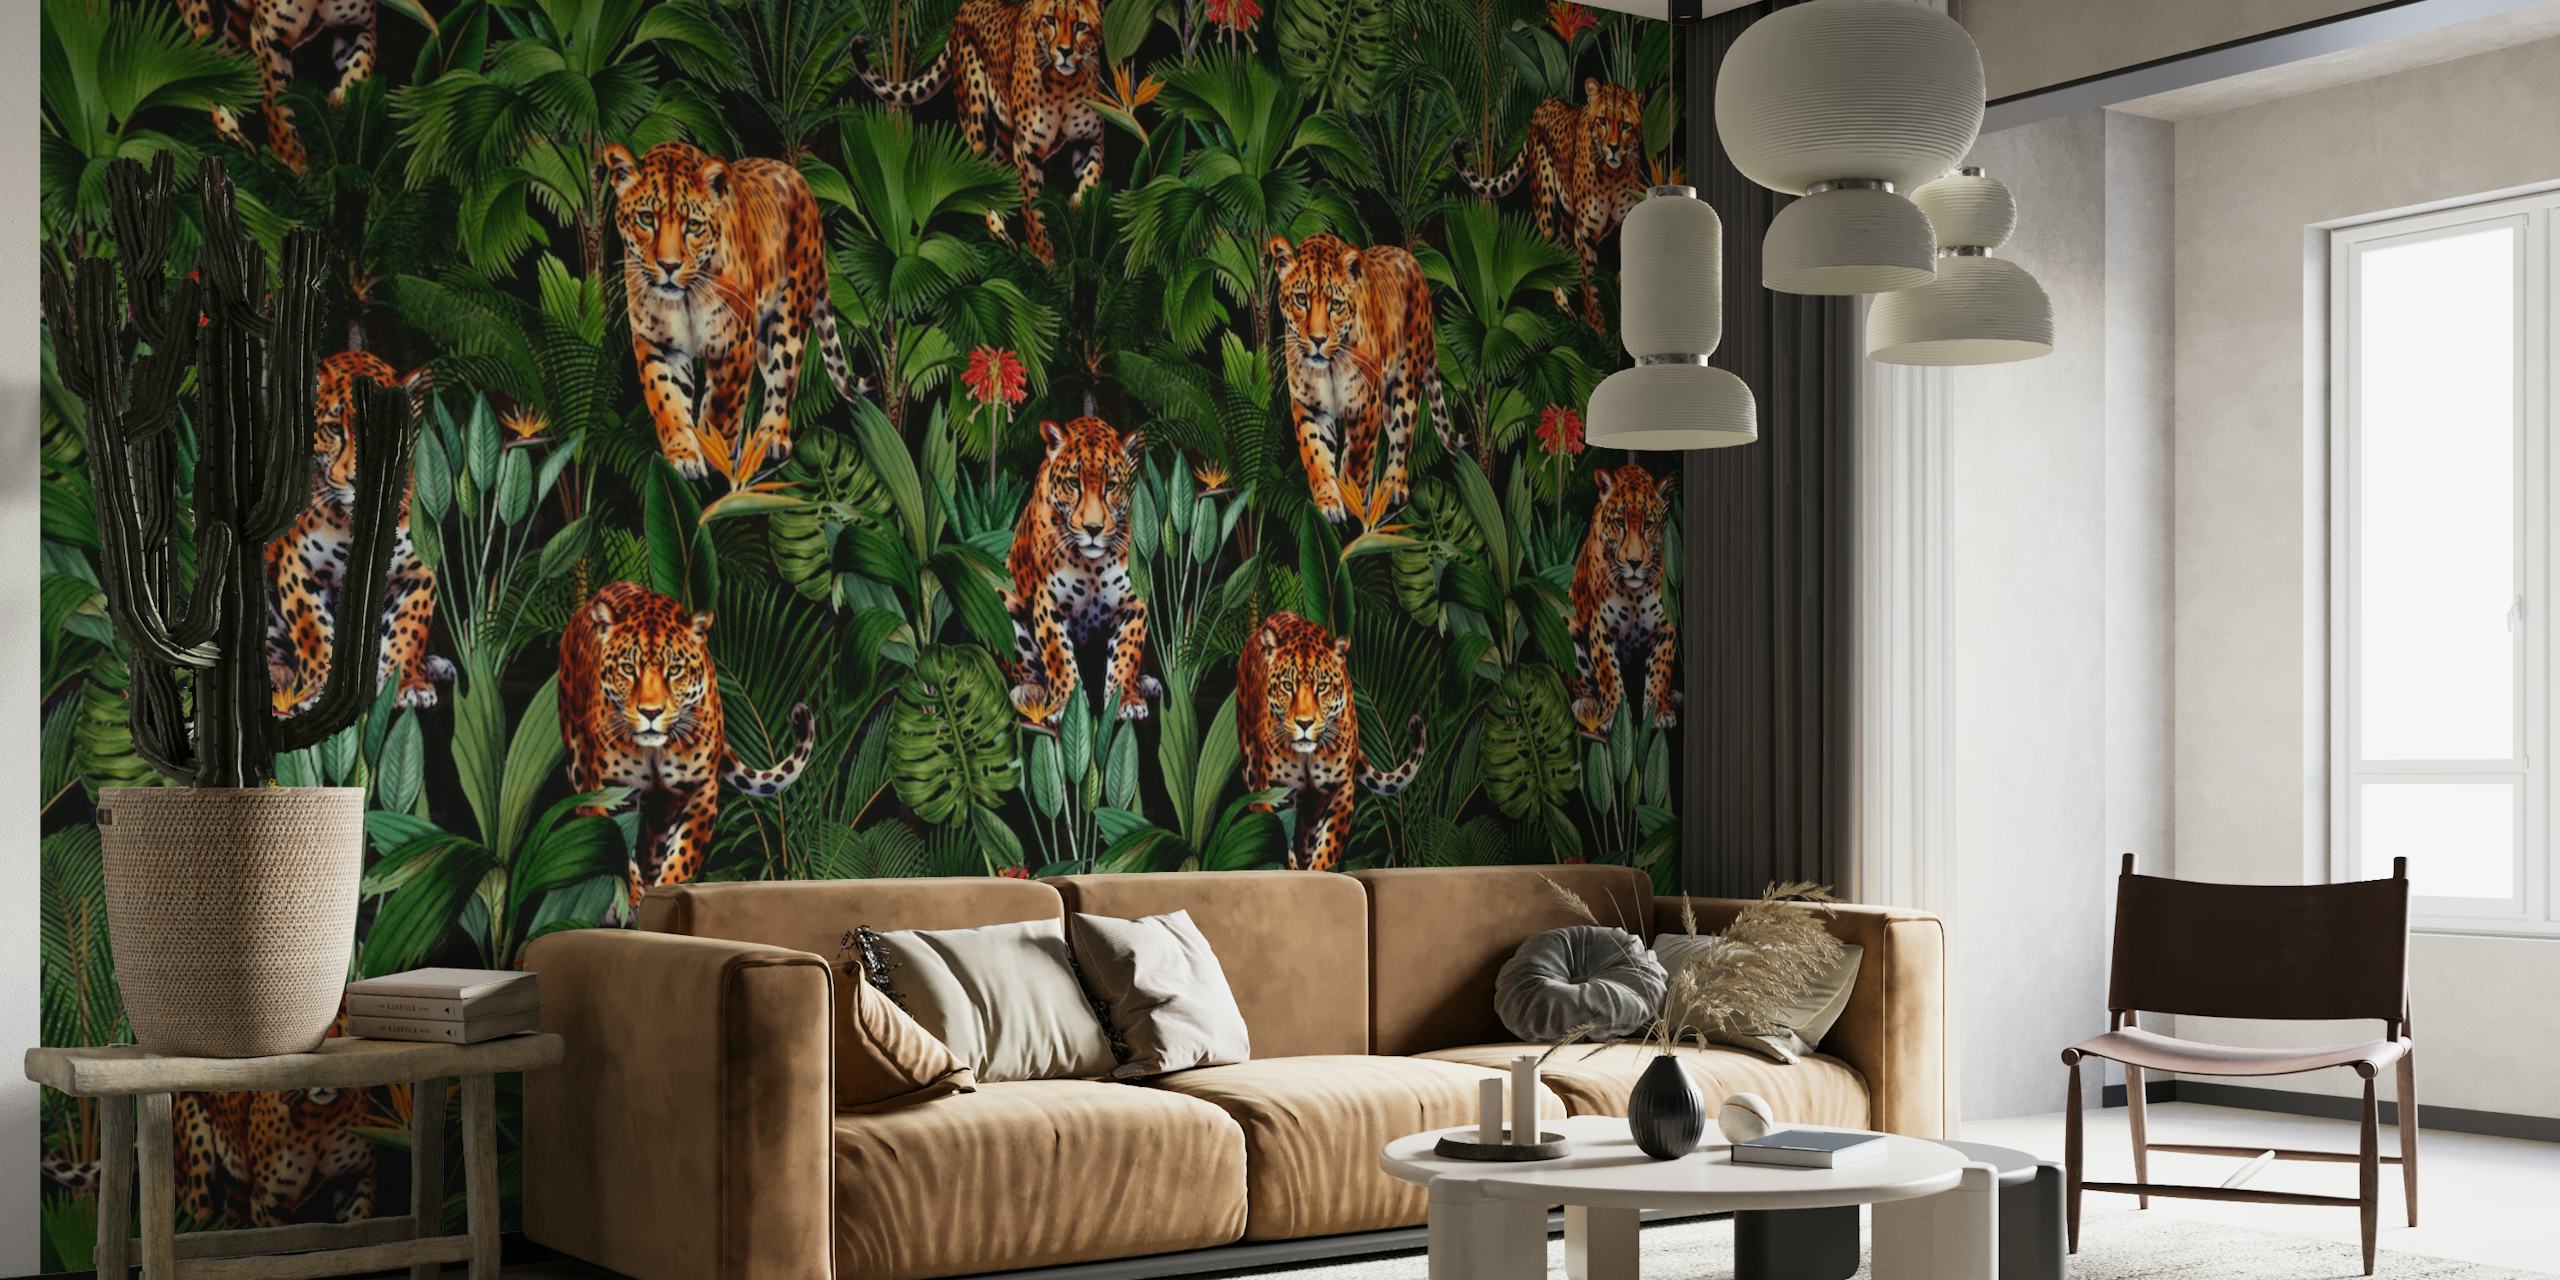 Zidna slika bujne džungle s tigrovima skrivenim među zelenim lišćem u noćnom okruženju.